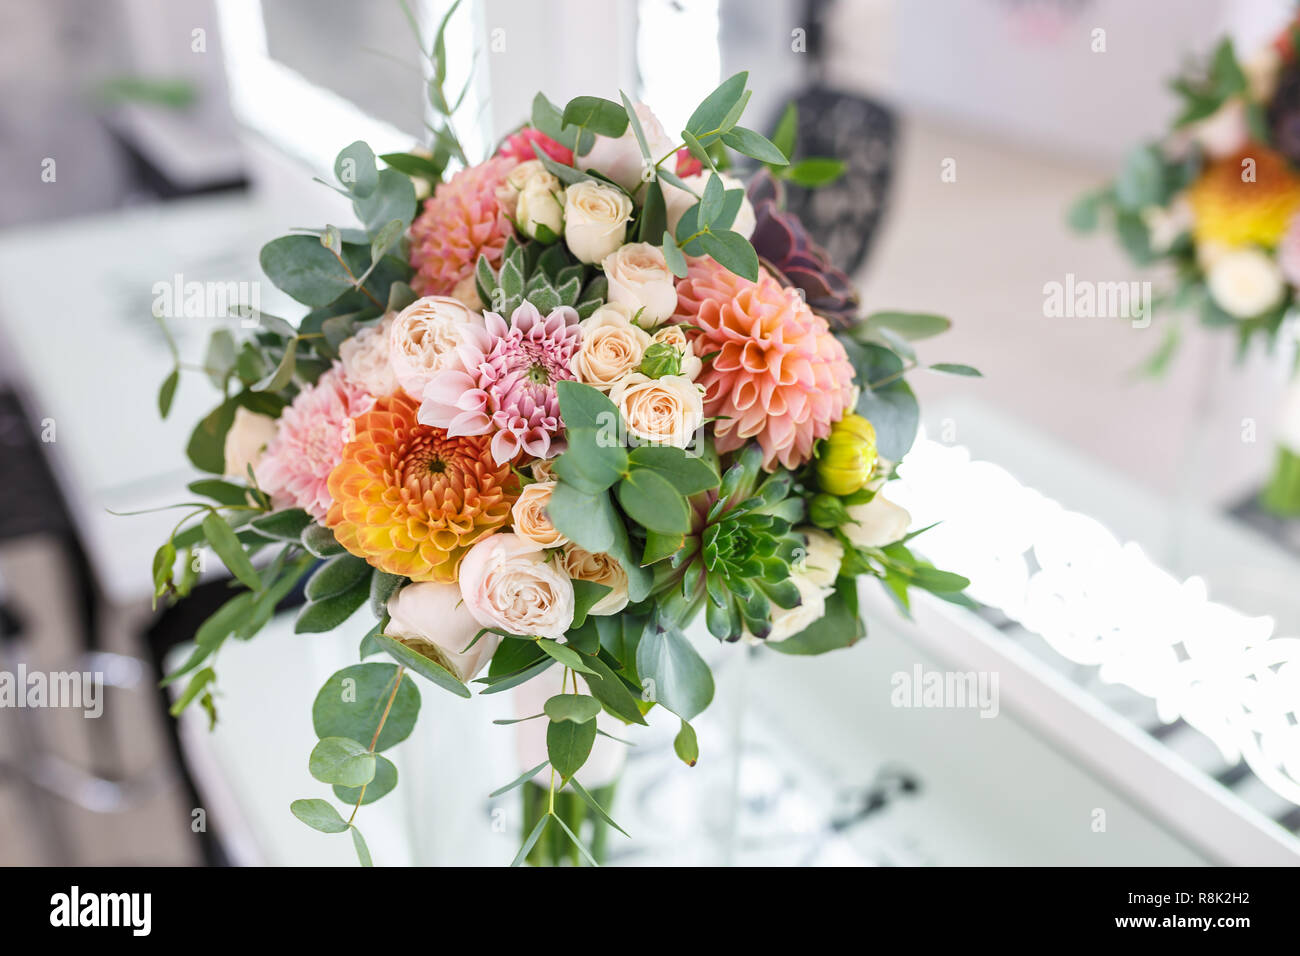 Helle wedding bouquet von Sommer Dahlien und Rosen Stockfotografie - Alamy